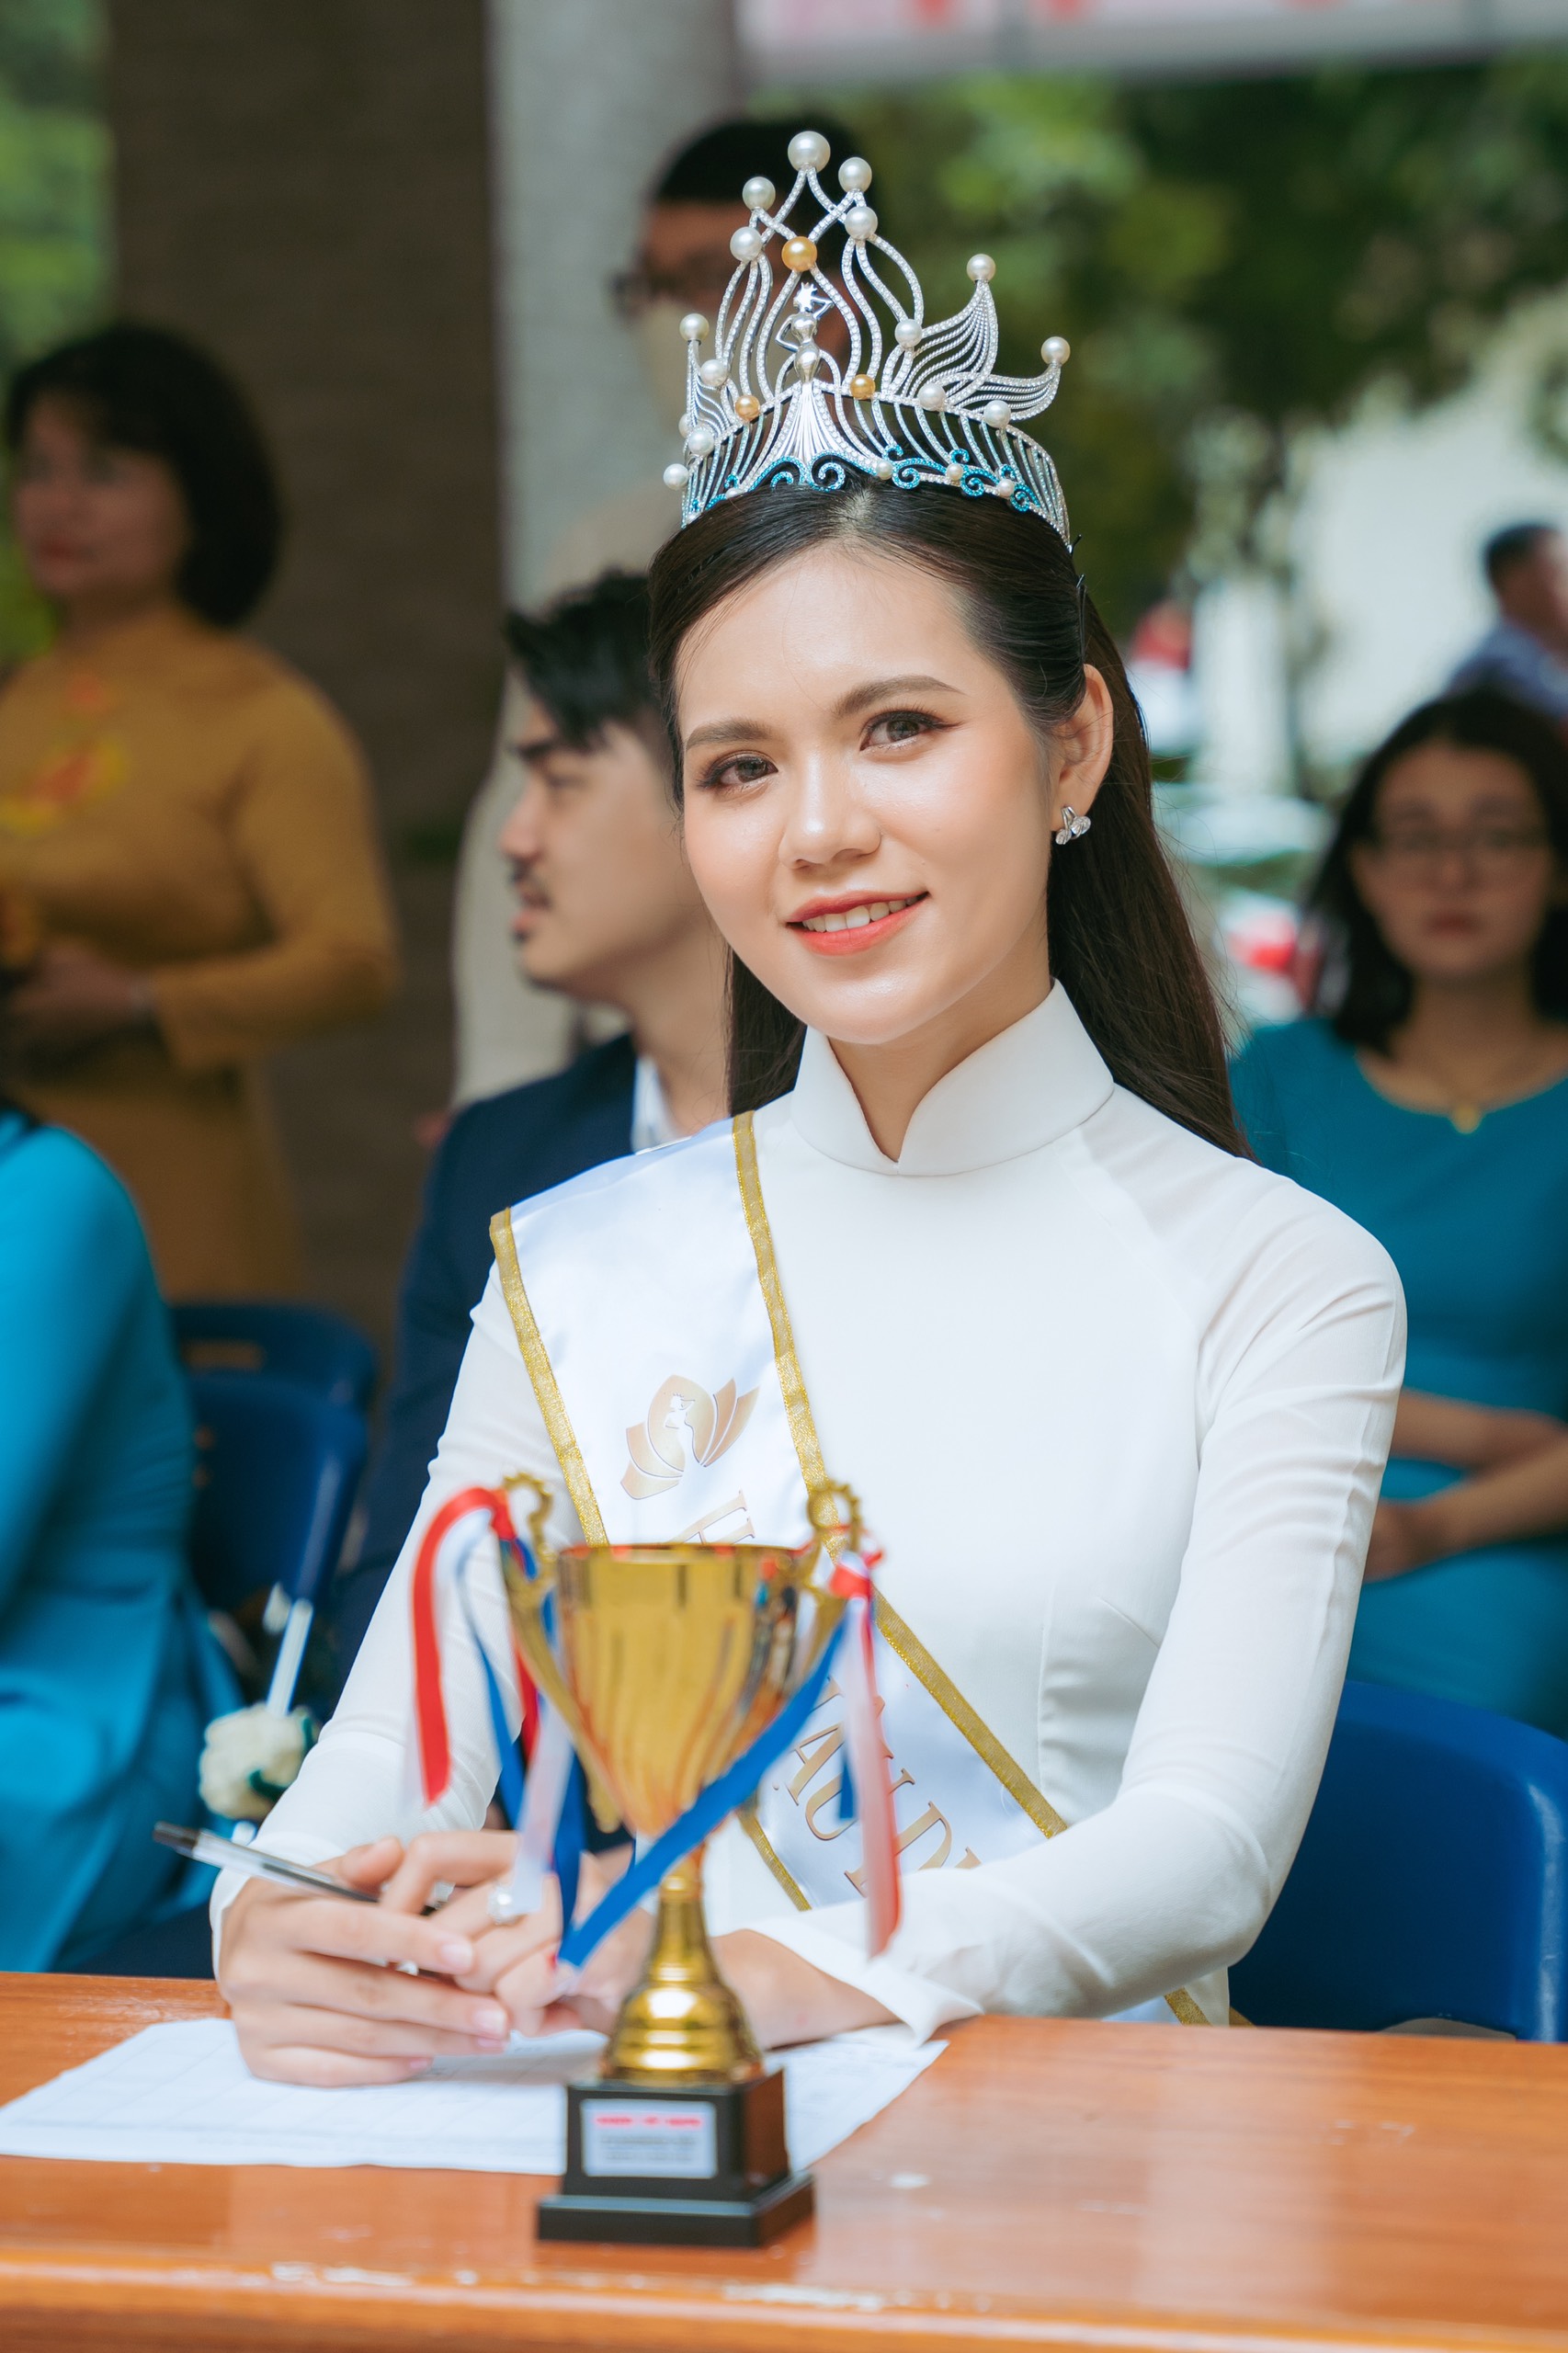 Tân Hoa hậu Lương Kỳ Duyên về thăm trường nhân ngày 20/11, nhớ kỷ niệm thời học chuyên Toán - Ảnh 3.